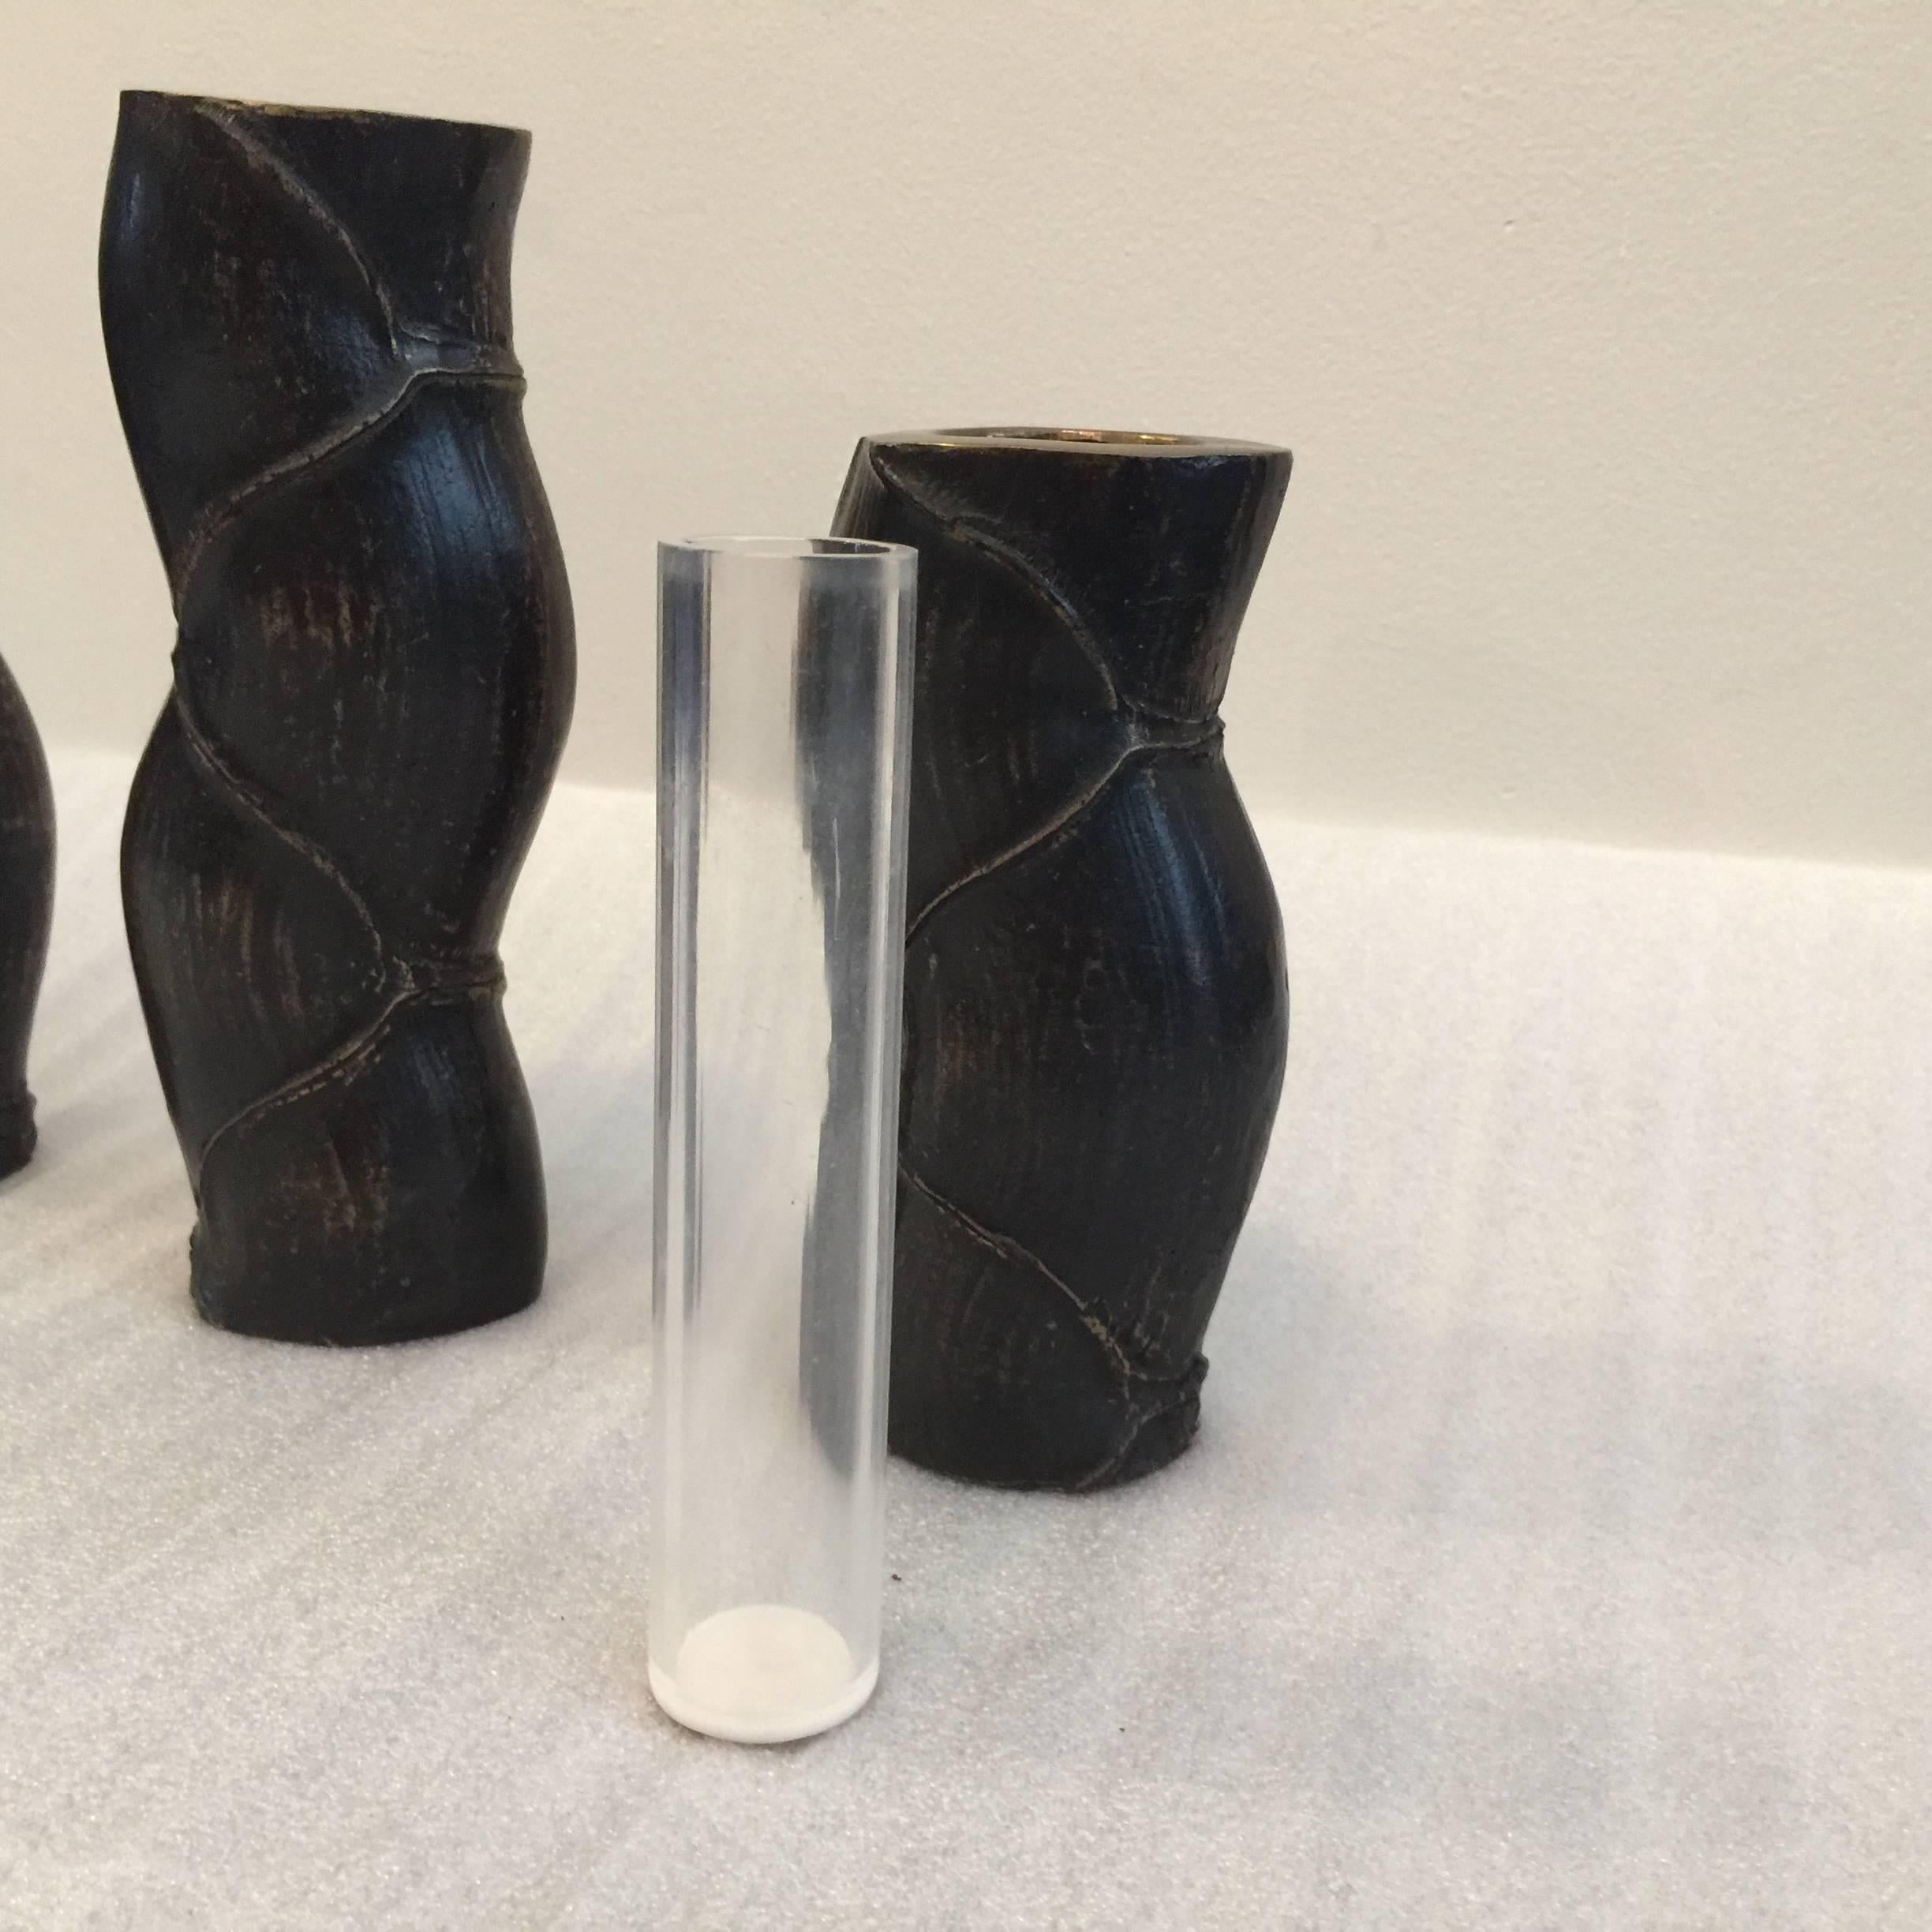 Finement moulés en bronze, ces vases à bourgeons japonais au design de faux bambou sont dotés d'un isolateur en acrylique pour contenir l'eau des fleurs fraîches. Il s'agit de lourdes sculptures en bronze/éléments de table.

Par ordre décroissant